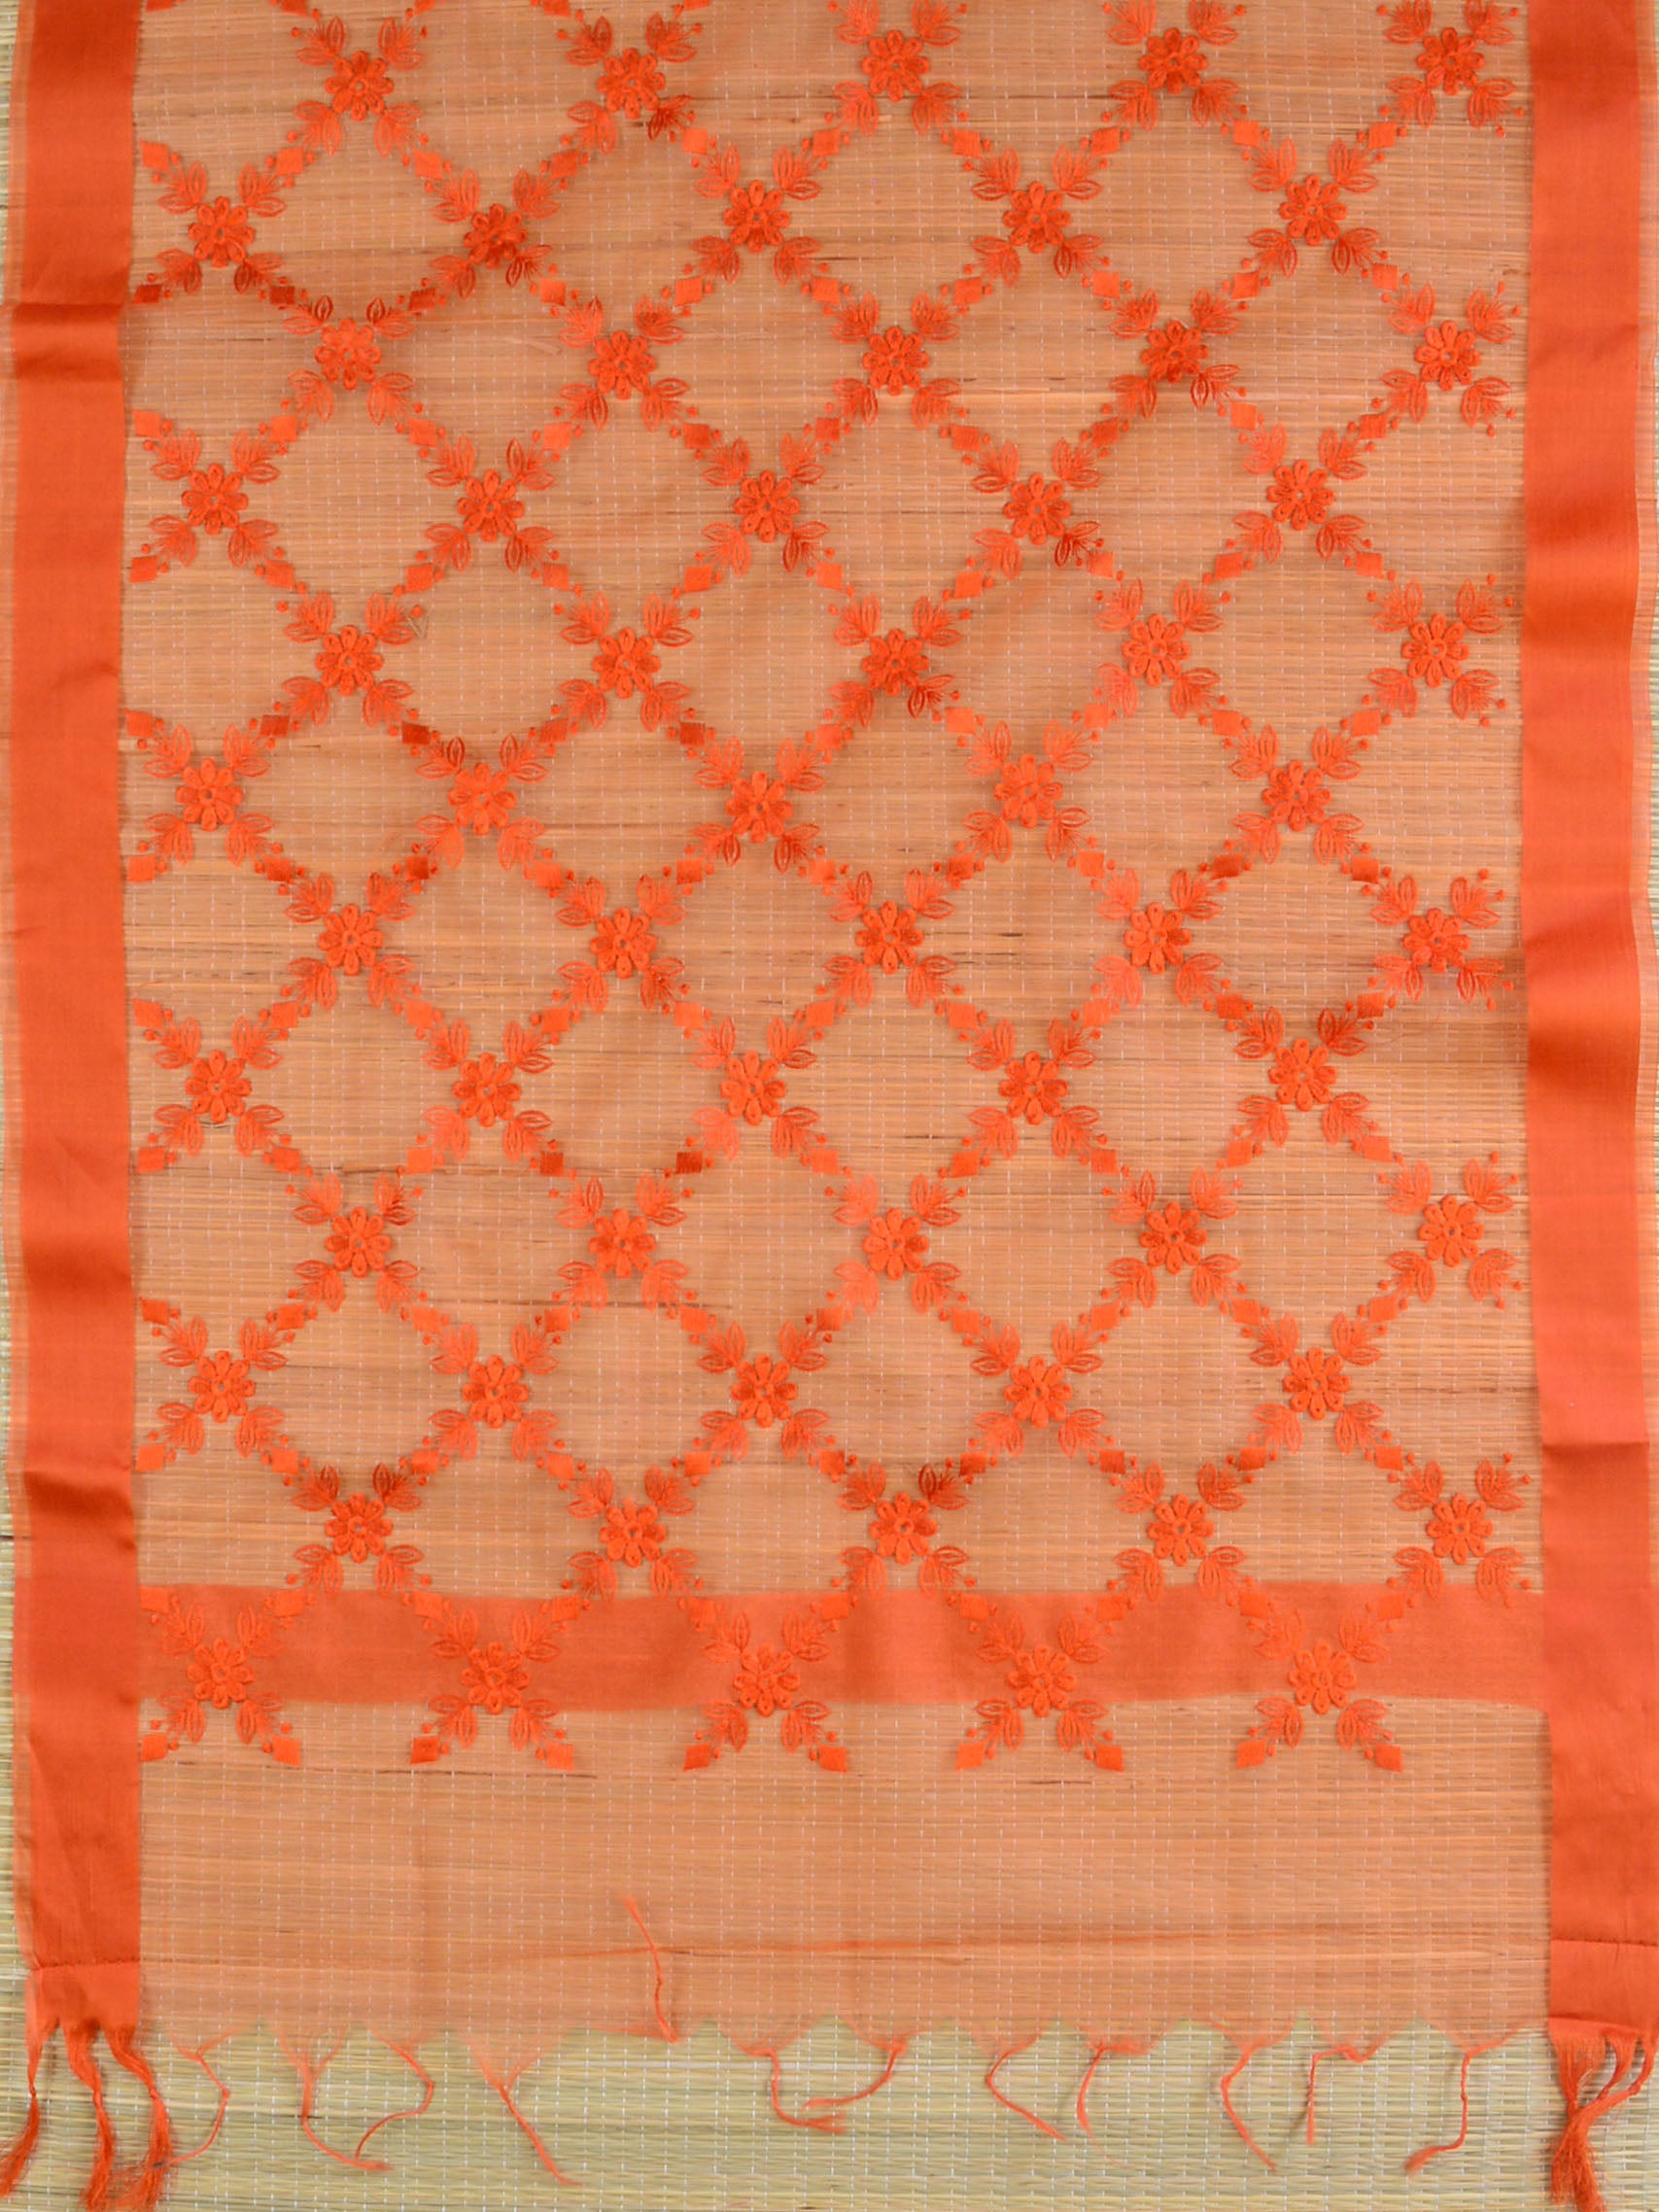 Banarasee Embroidered Resham Jaal Design Organza Dupatta-Orange